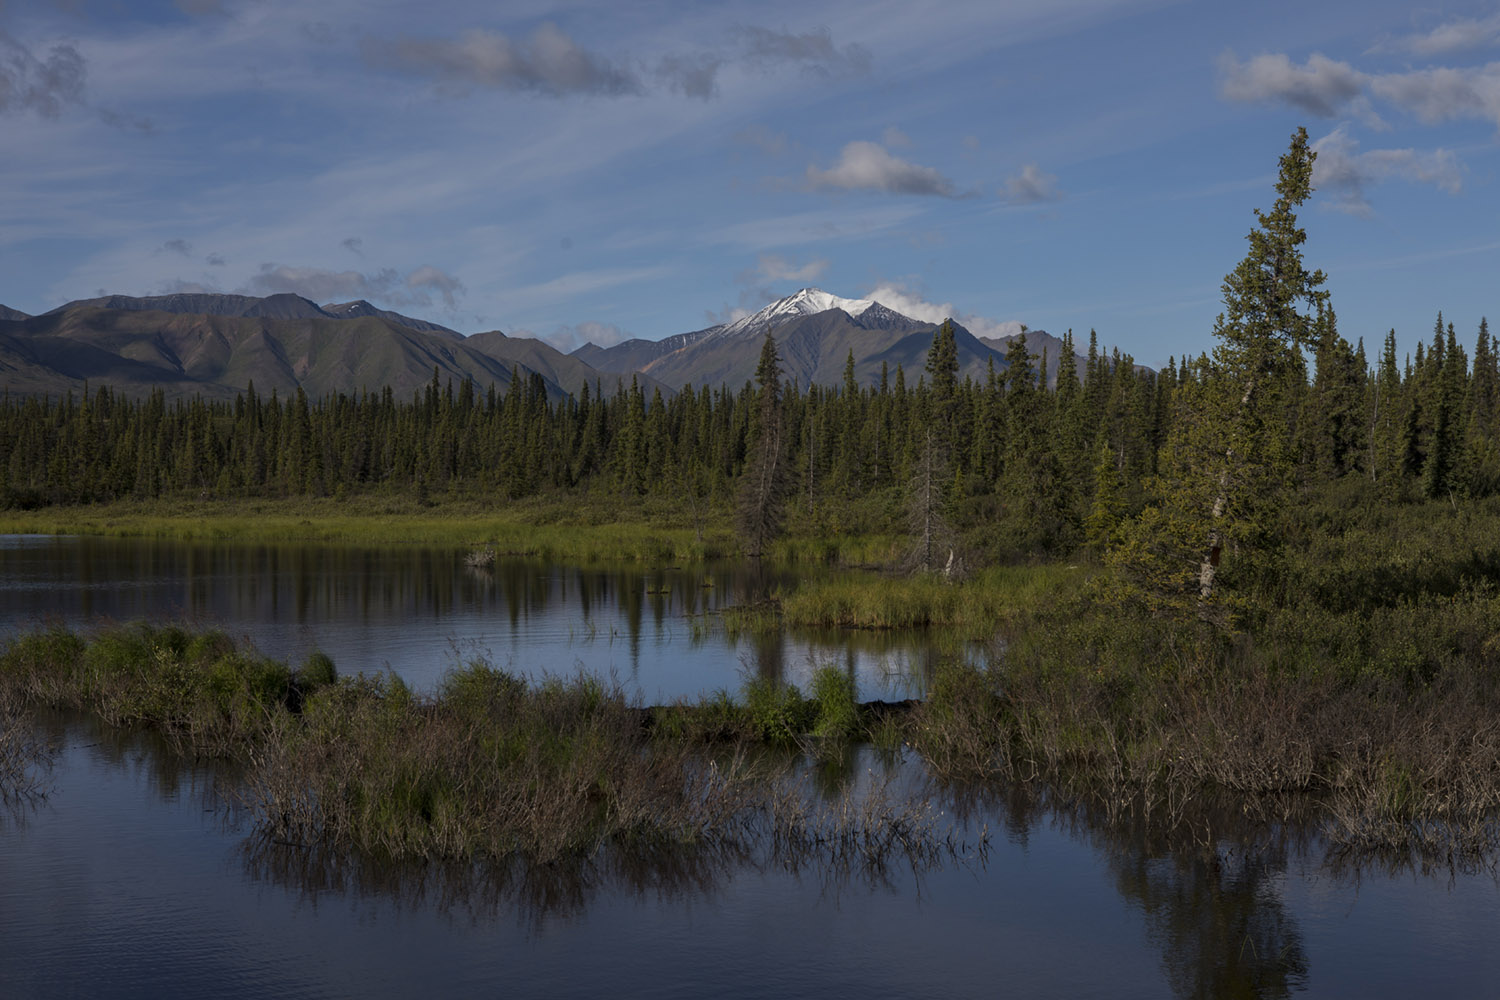 Alaska, denali, national park, state park, wilderness, nature, bart coolen, photography